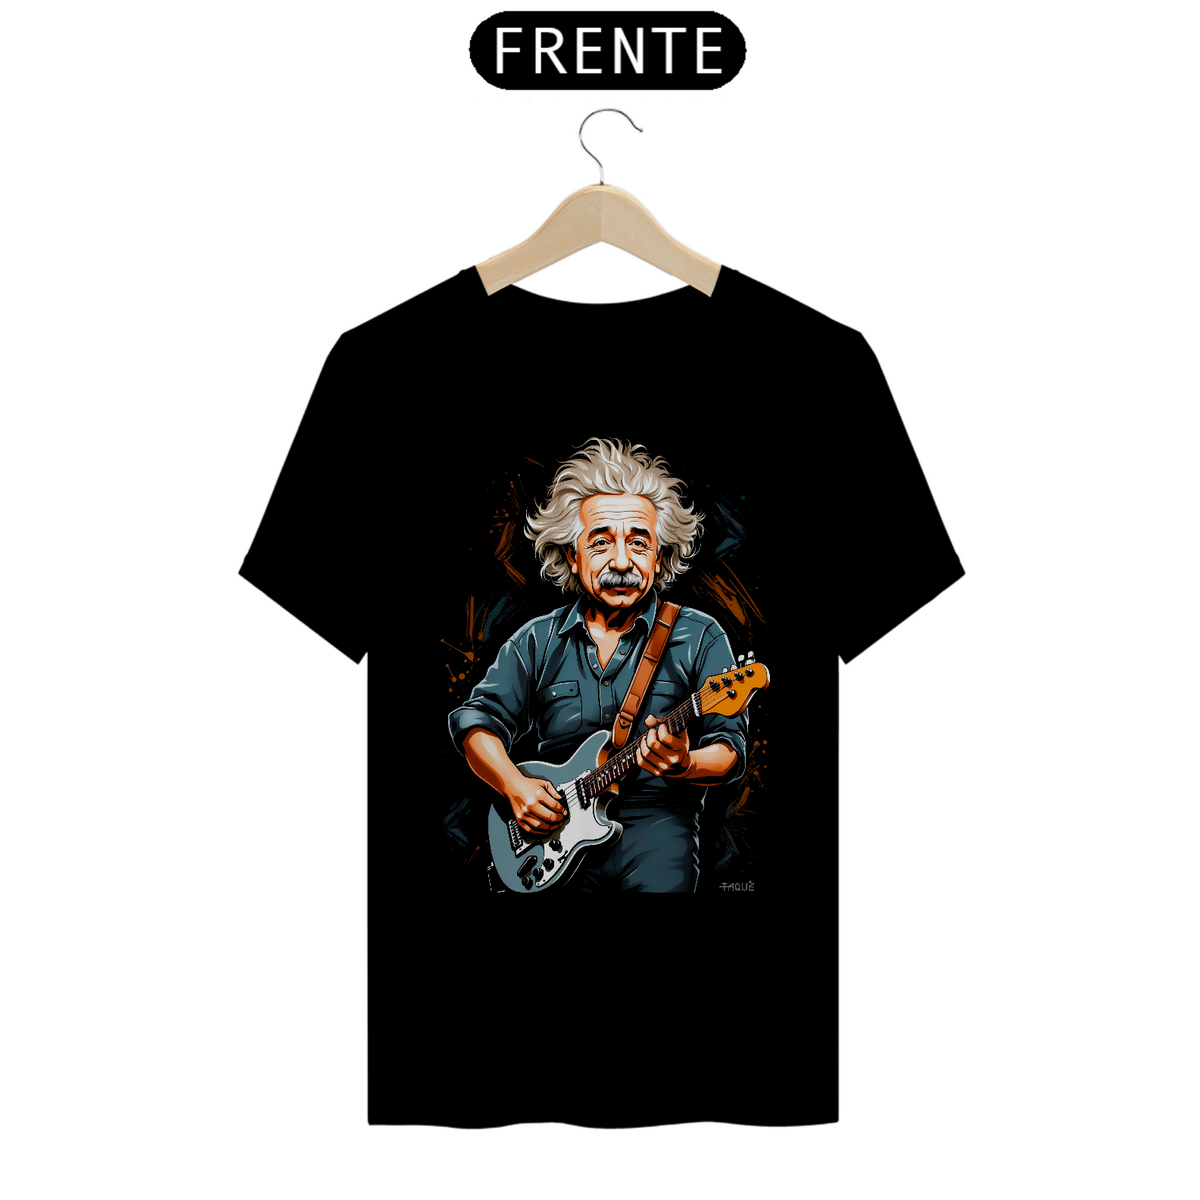 Nome do produto: Camiseta Taquê Genius Rocker